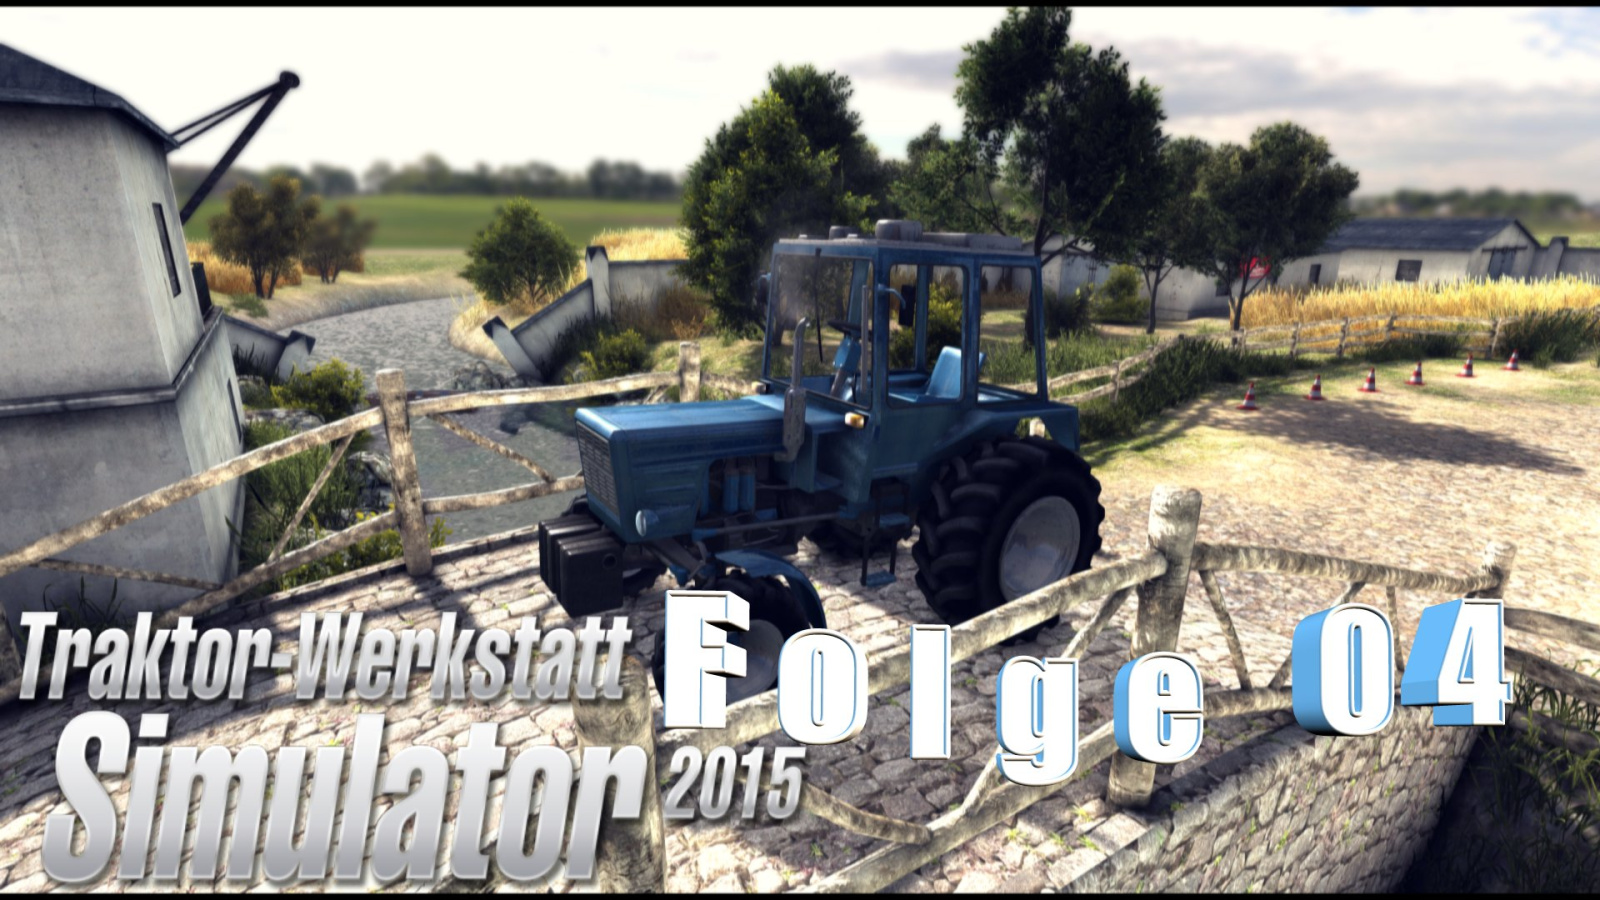 Traktor-Werkstatt Simulator 2015 – Let’s play Folge 04